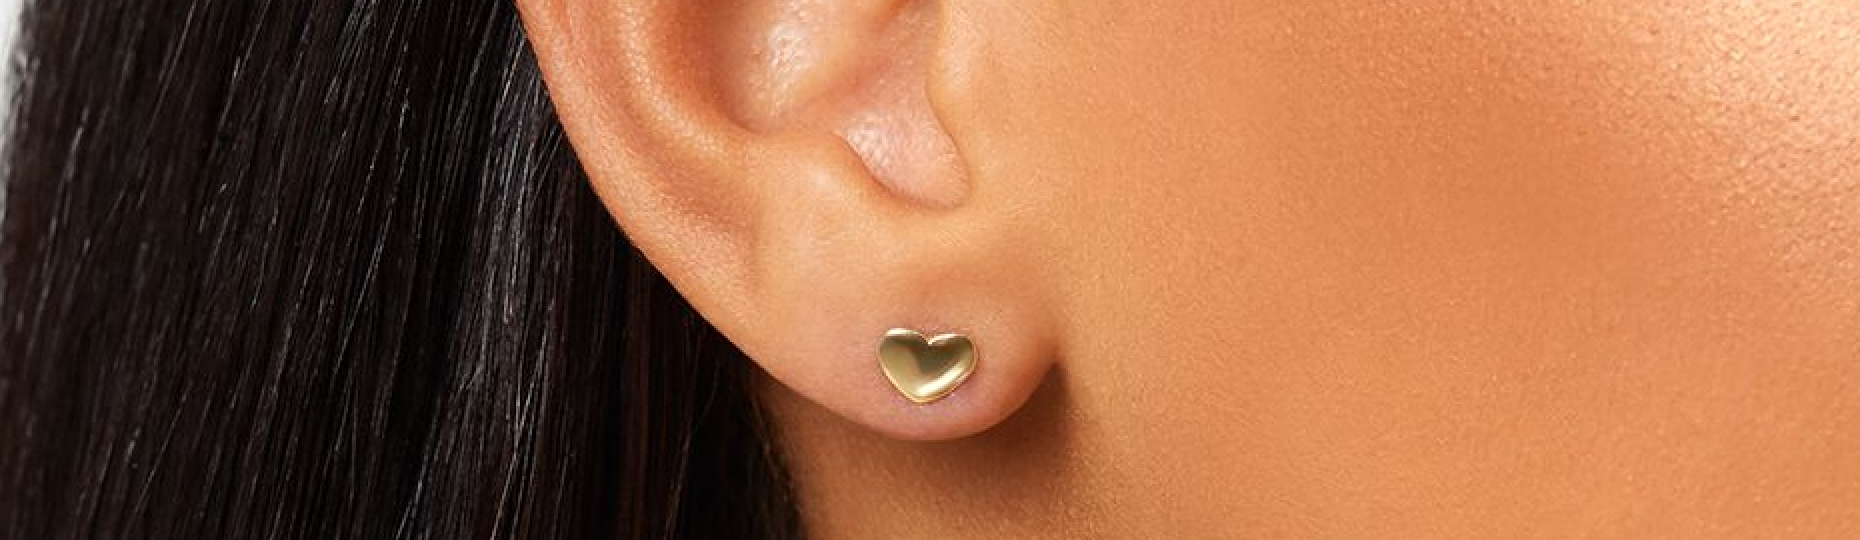 Gold heart stud earrings in womans earlobe